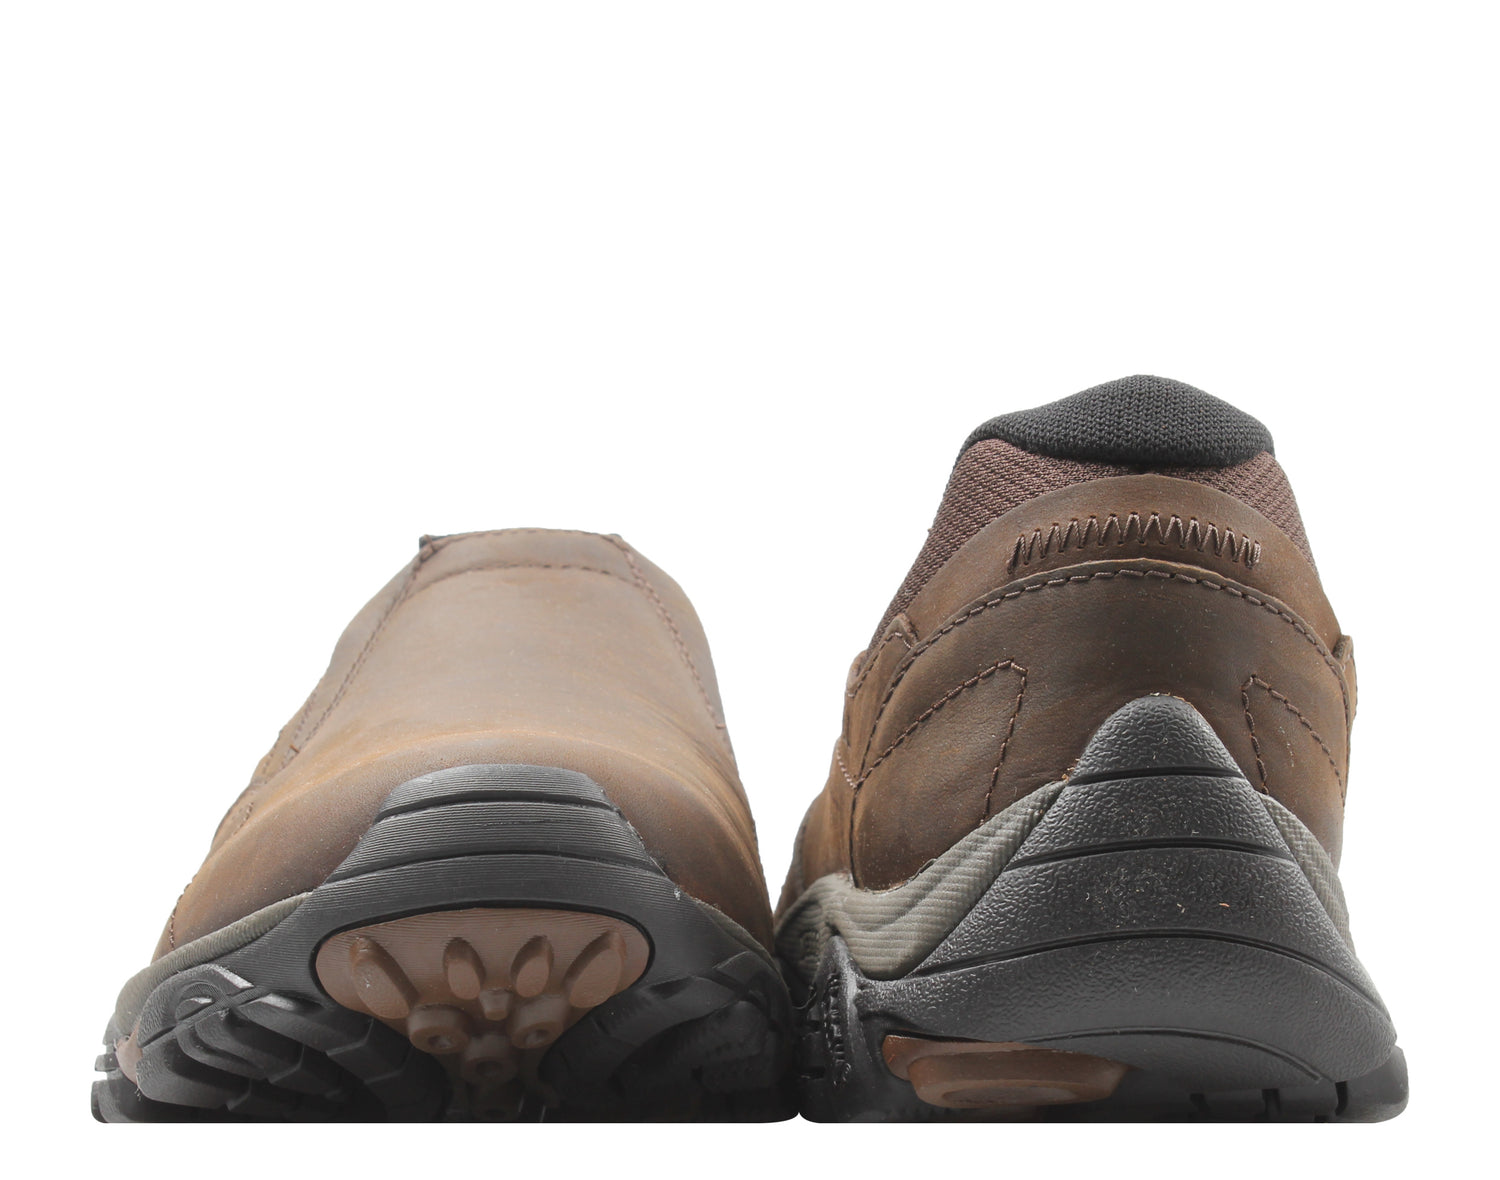 Merrell Moab Adventure Moc Men's Slip-On Shoes